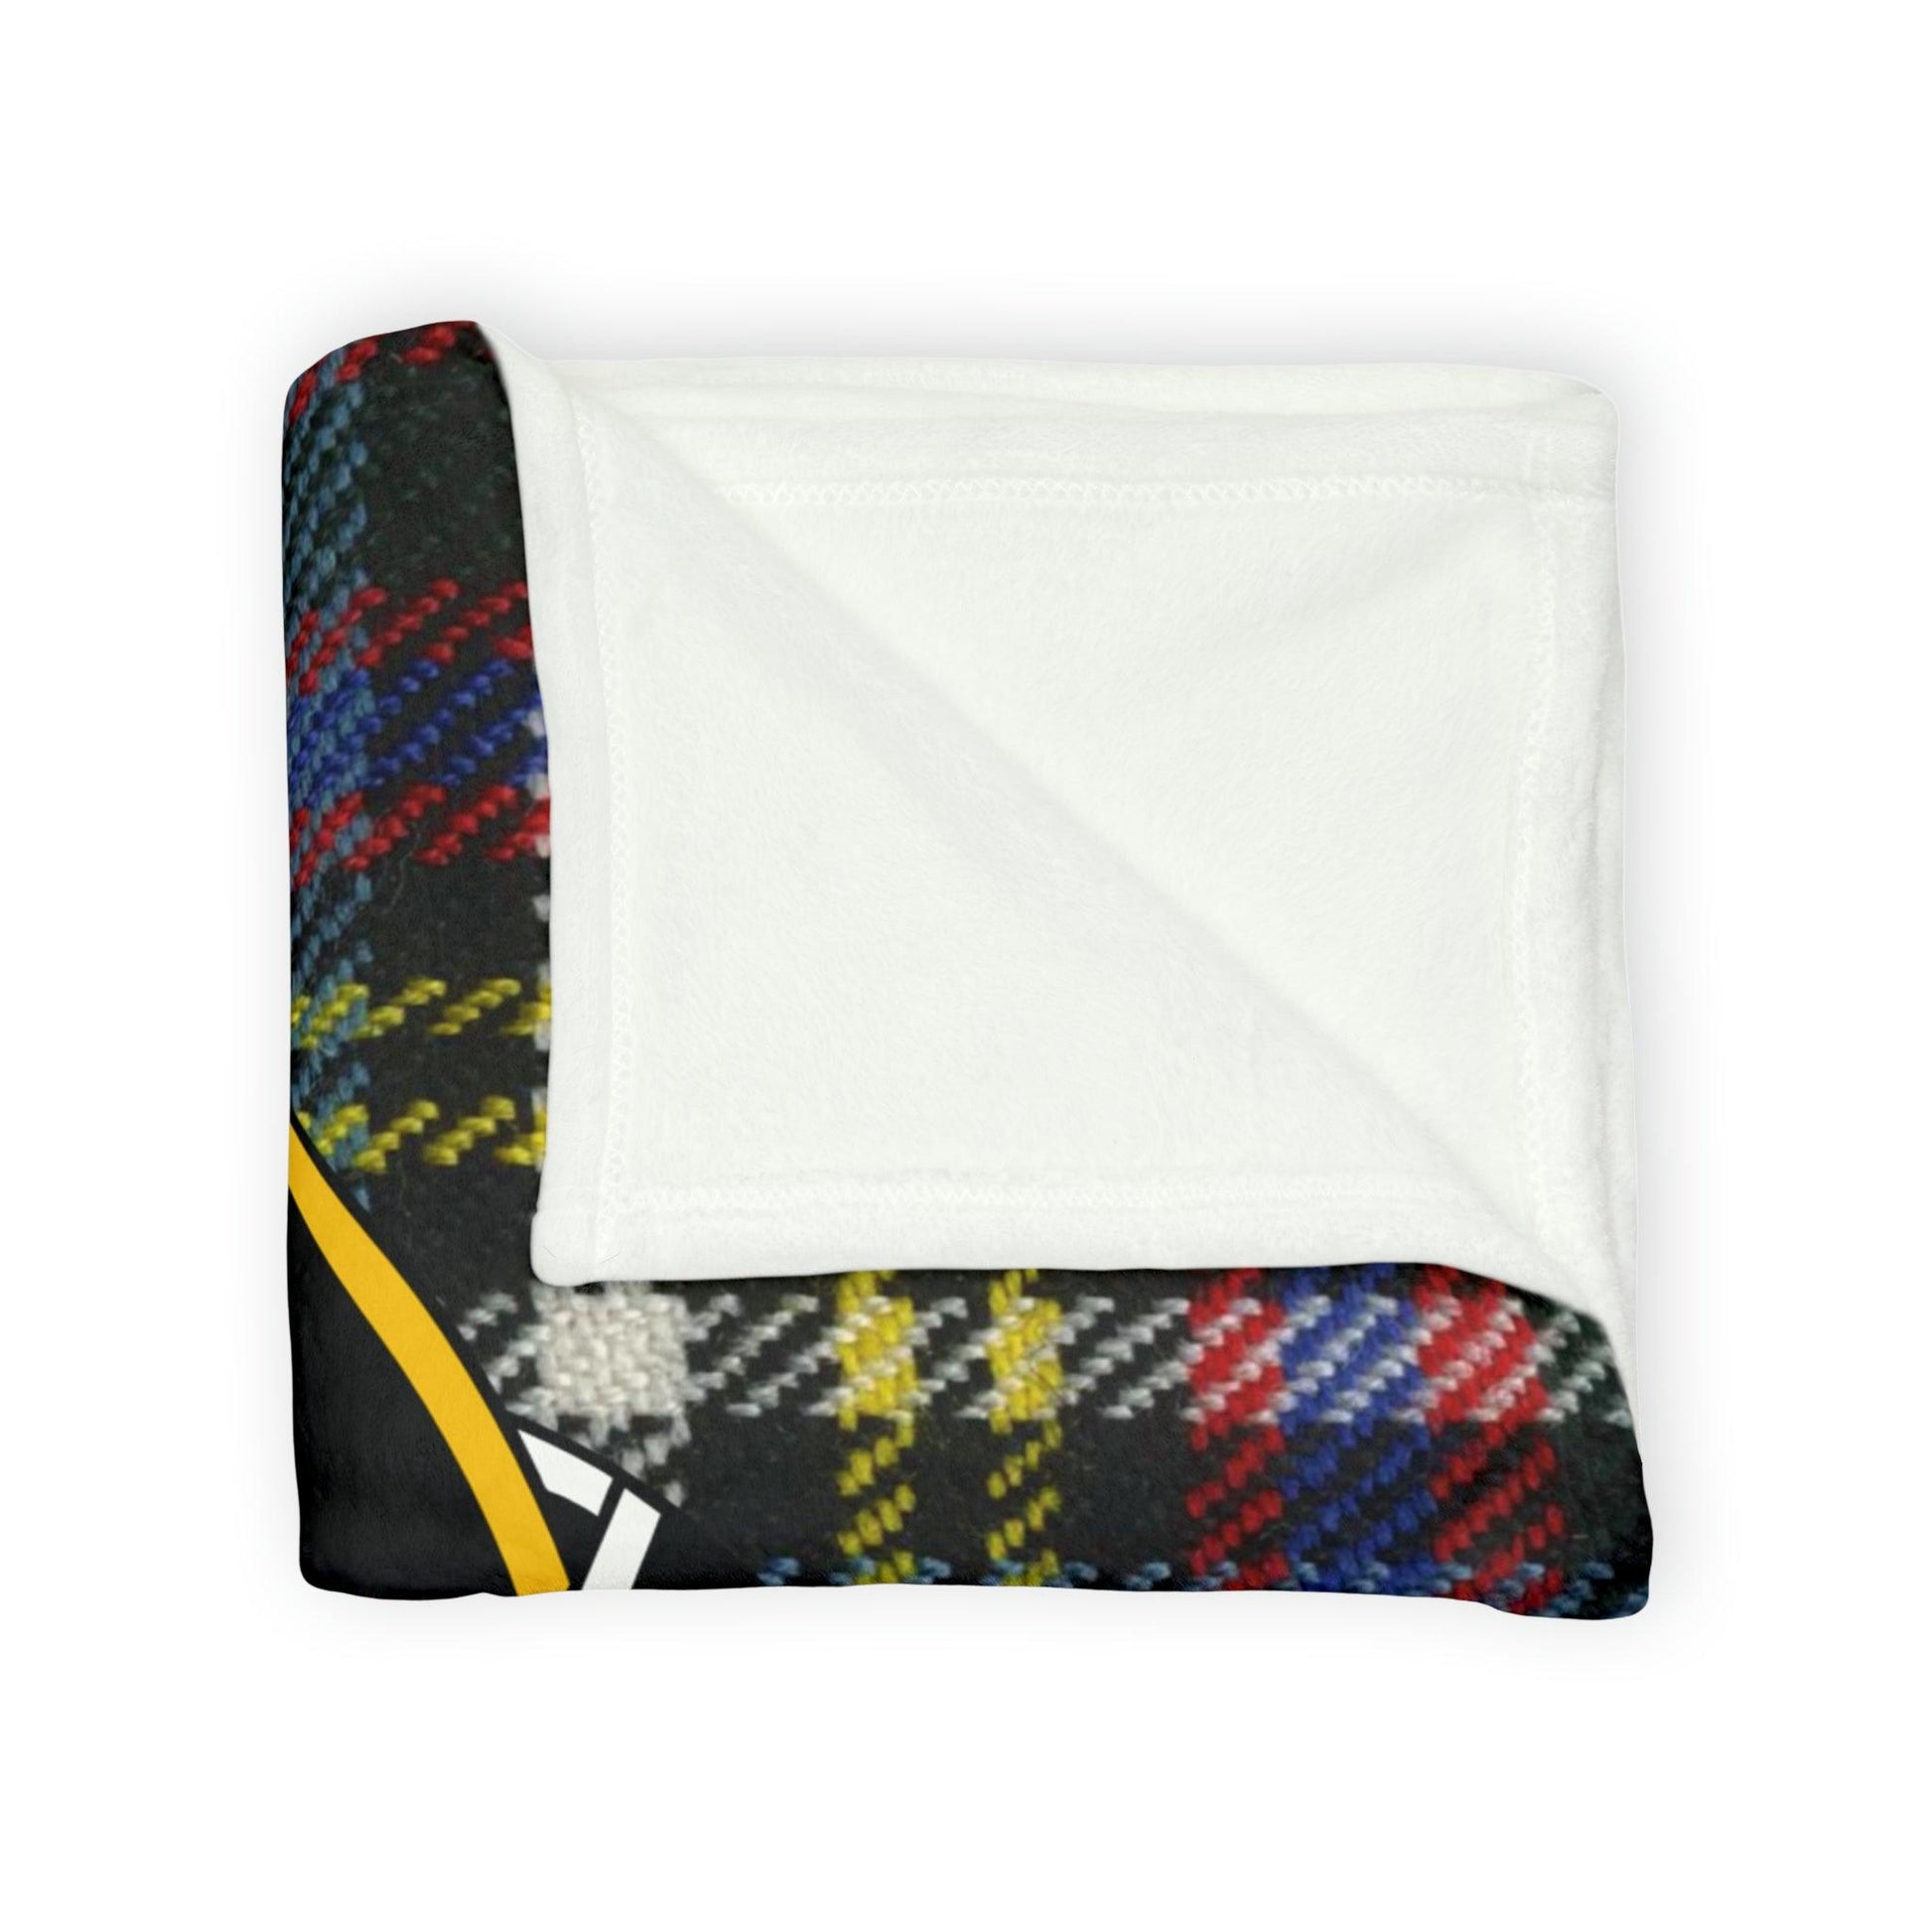 Anderson Clan Crest Scottish Tartan Blanket